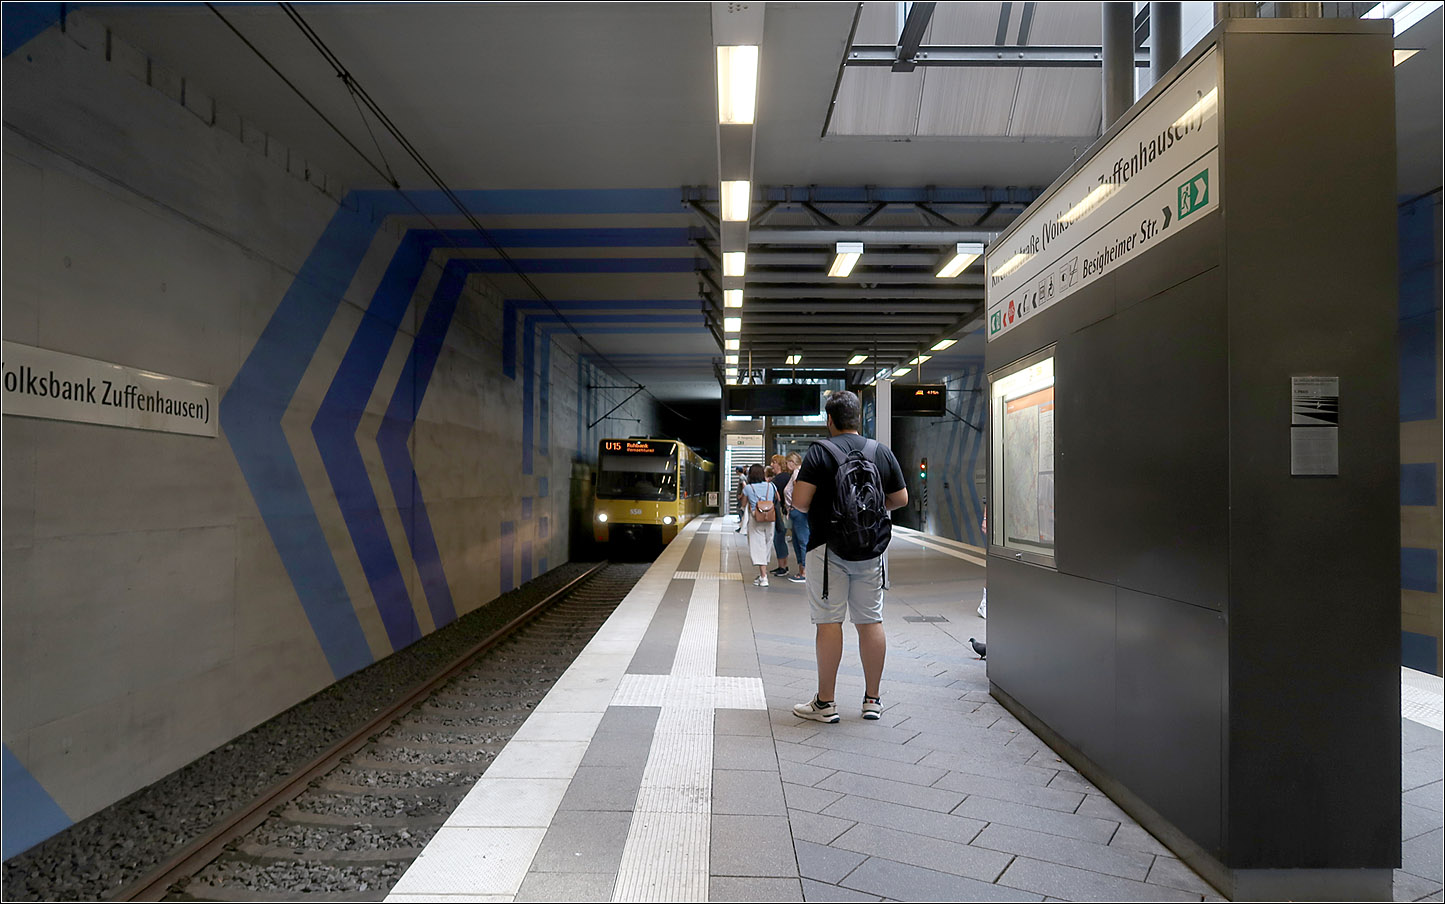 Die vielleicht kürzeste U-Station in Deutschland - 

Ich weiß nicht ob die unterirdische Straßenbahnhaltestelle am Rostocker Hauptbahnhof ähnlich kurze Bahnsteige hat, jedenfalls hat der U-Bahnhof Kirchtalstraße (Volksbank Zuffenhausen) lediglich ein Bahnsteiglänge von nur 40 Meter, da hier die mit nur einem Doppeltriebwagen verkehrende U15 unterwegs ist. Ein Verlängerung auf 80 Meter wäre möglich. Etliche U-Haltestellen der Stuttgarter Stadtbahn haben eine Bahnsteiglänge die für Dreifachtraktionen ausreichen würden oder könnten auf diese Länge ausgebaut werden.

Der Stadtbahntunnel in Stuttgart-Zuffenhausen wurde 2011 fertiggestellt. Während der Bauzeit war der Betrieb auf dem Streckenast nach Stammheim stillgelegt.

Die Rampe, die Treppe und der Aufzug führen direkt hinauf zur Straßenmitte, ähnlich der U-Bahnhöfe der Berliner U6 in der dortigen Friedrichstraße. In Stuttgart steigt steigt die Decke der Station nach Westen hin an, entsprechend der Steigung der darüber liegenden Stra0e. 

03.08.2023 (M)